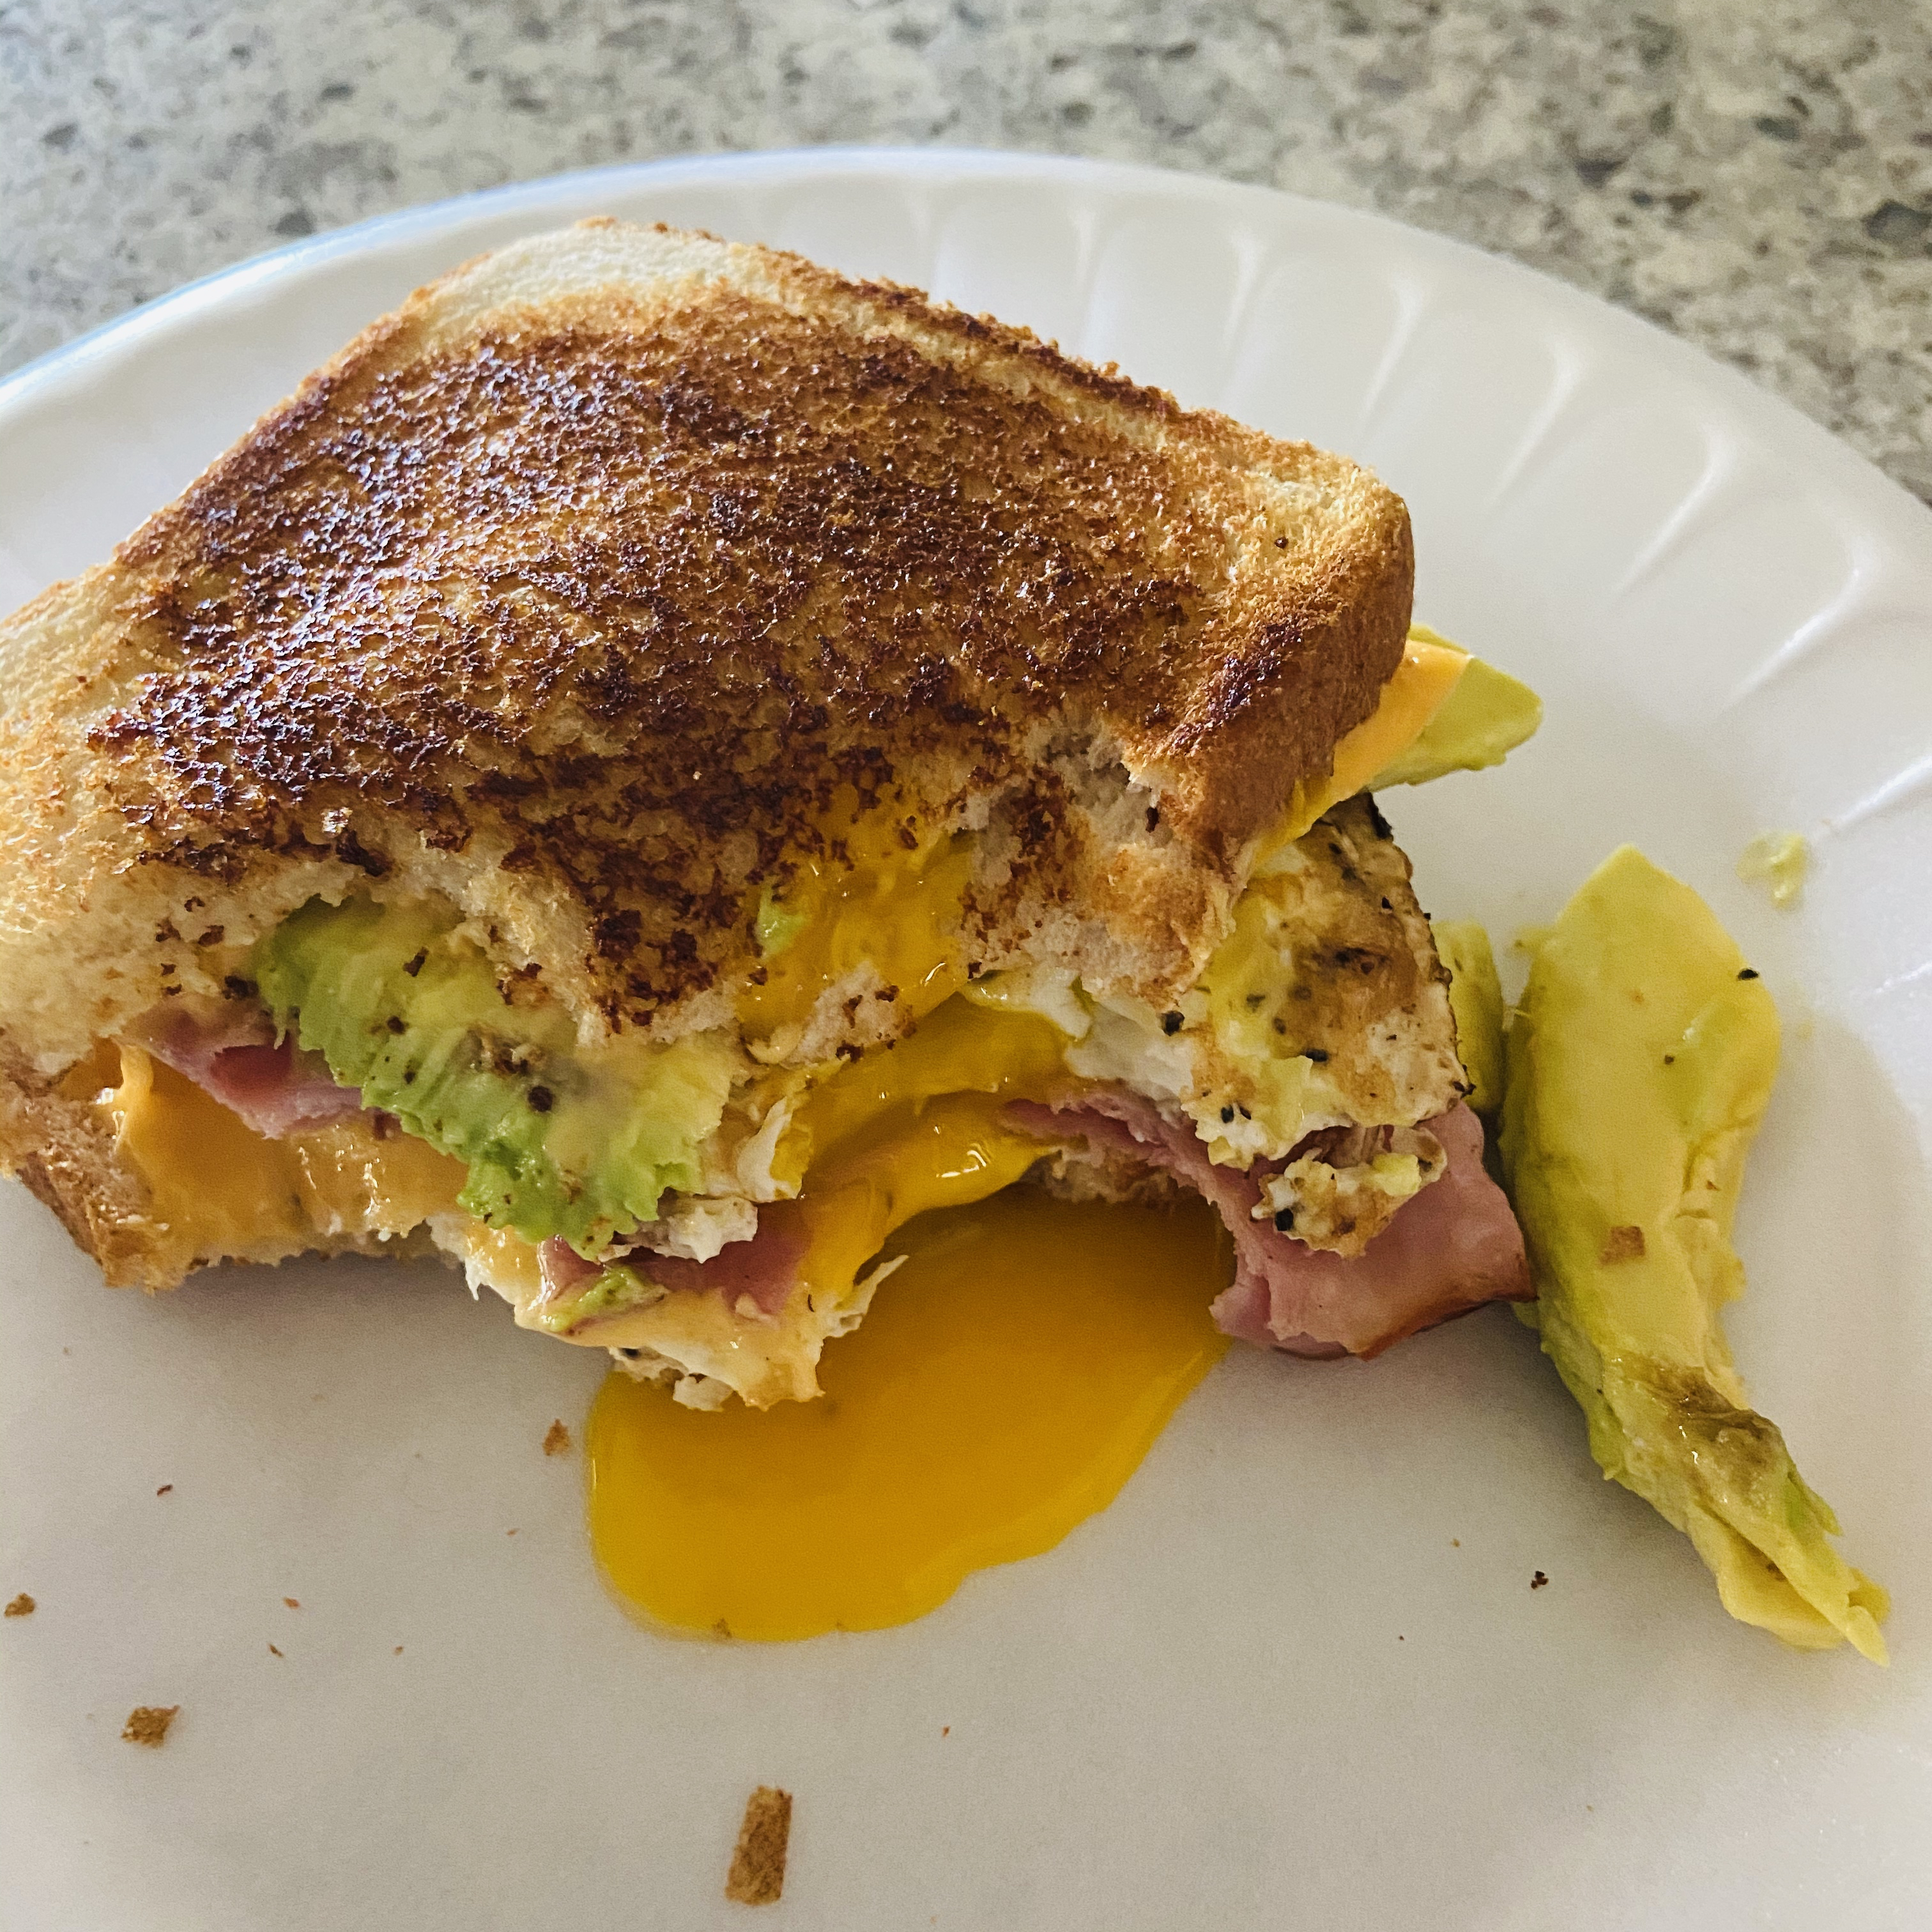 Avocado Breakfast Sandwich 